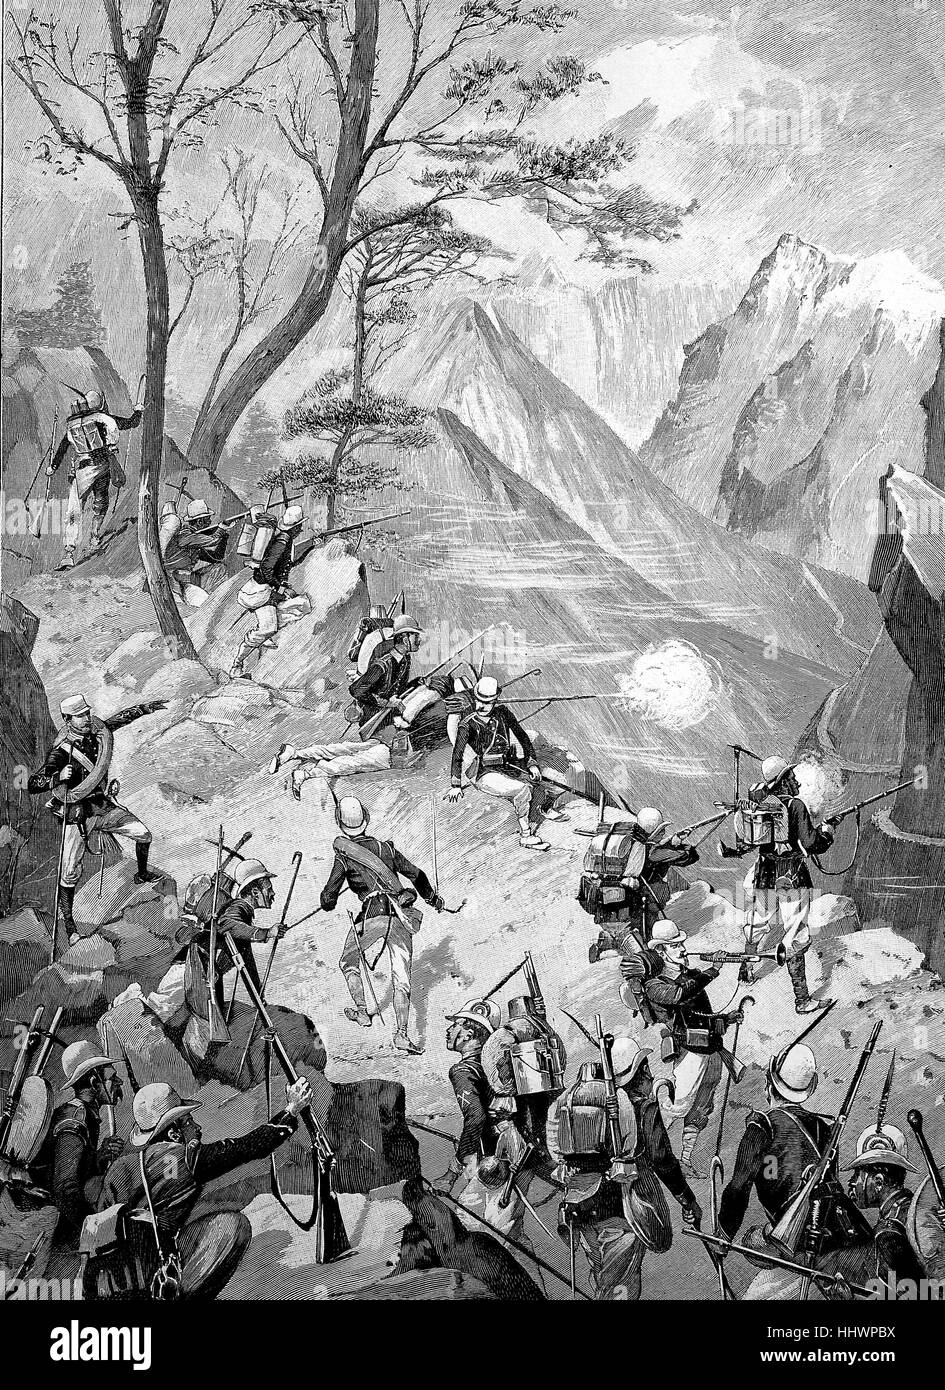 Manöver der italienischen Alpen Jäger am Mont Genevre, Italien, Originalzeichnung von A. Wald, historisches Bild oder Illustration, veröffentlicht 1890, Digital verbessert Stockfoto